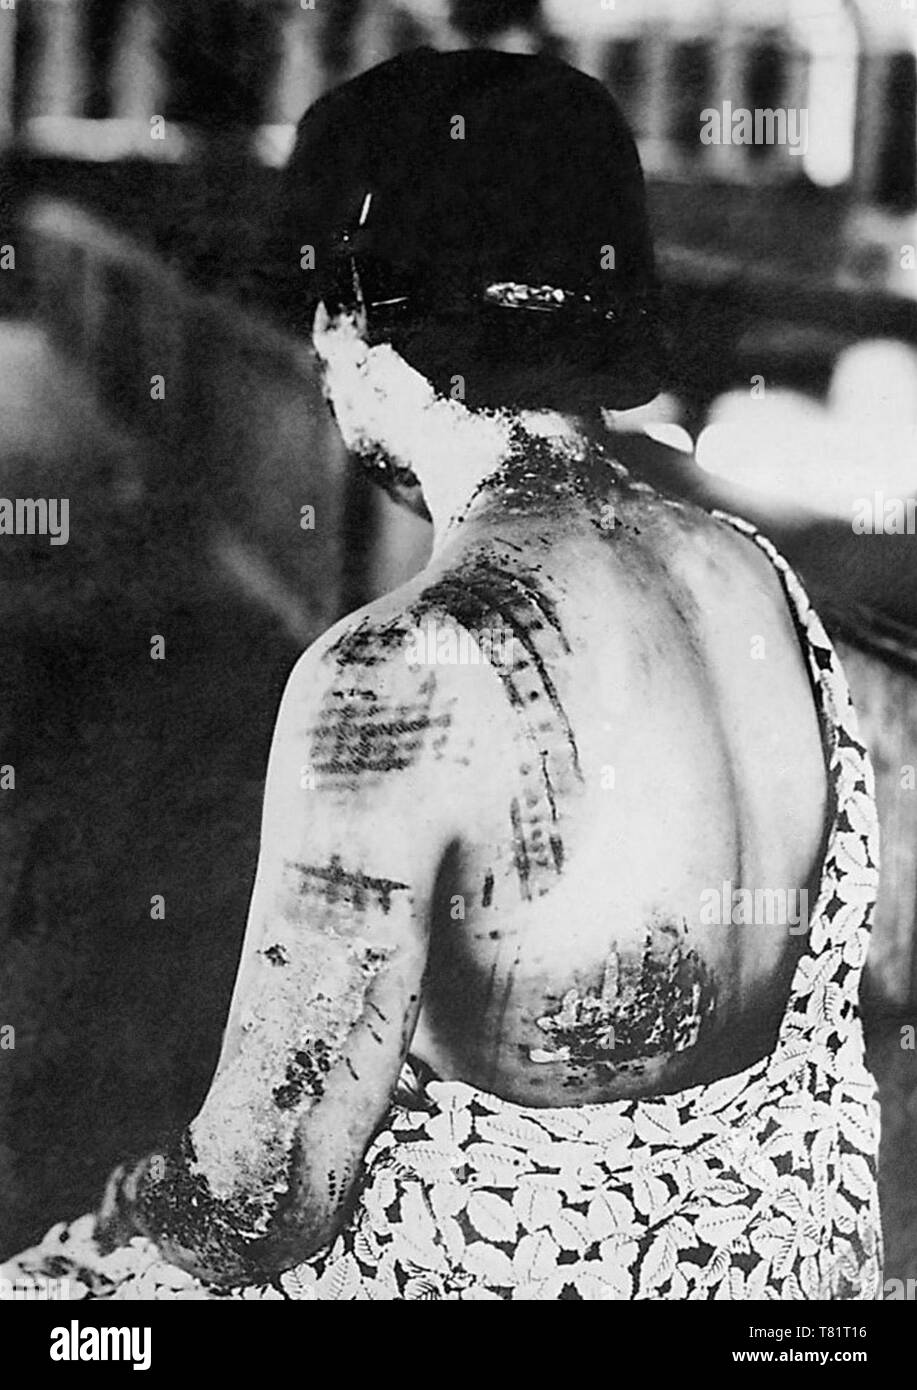 Les marques de brûlures de rayonnement, Hiroshima, 1945 Banque D'Images